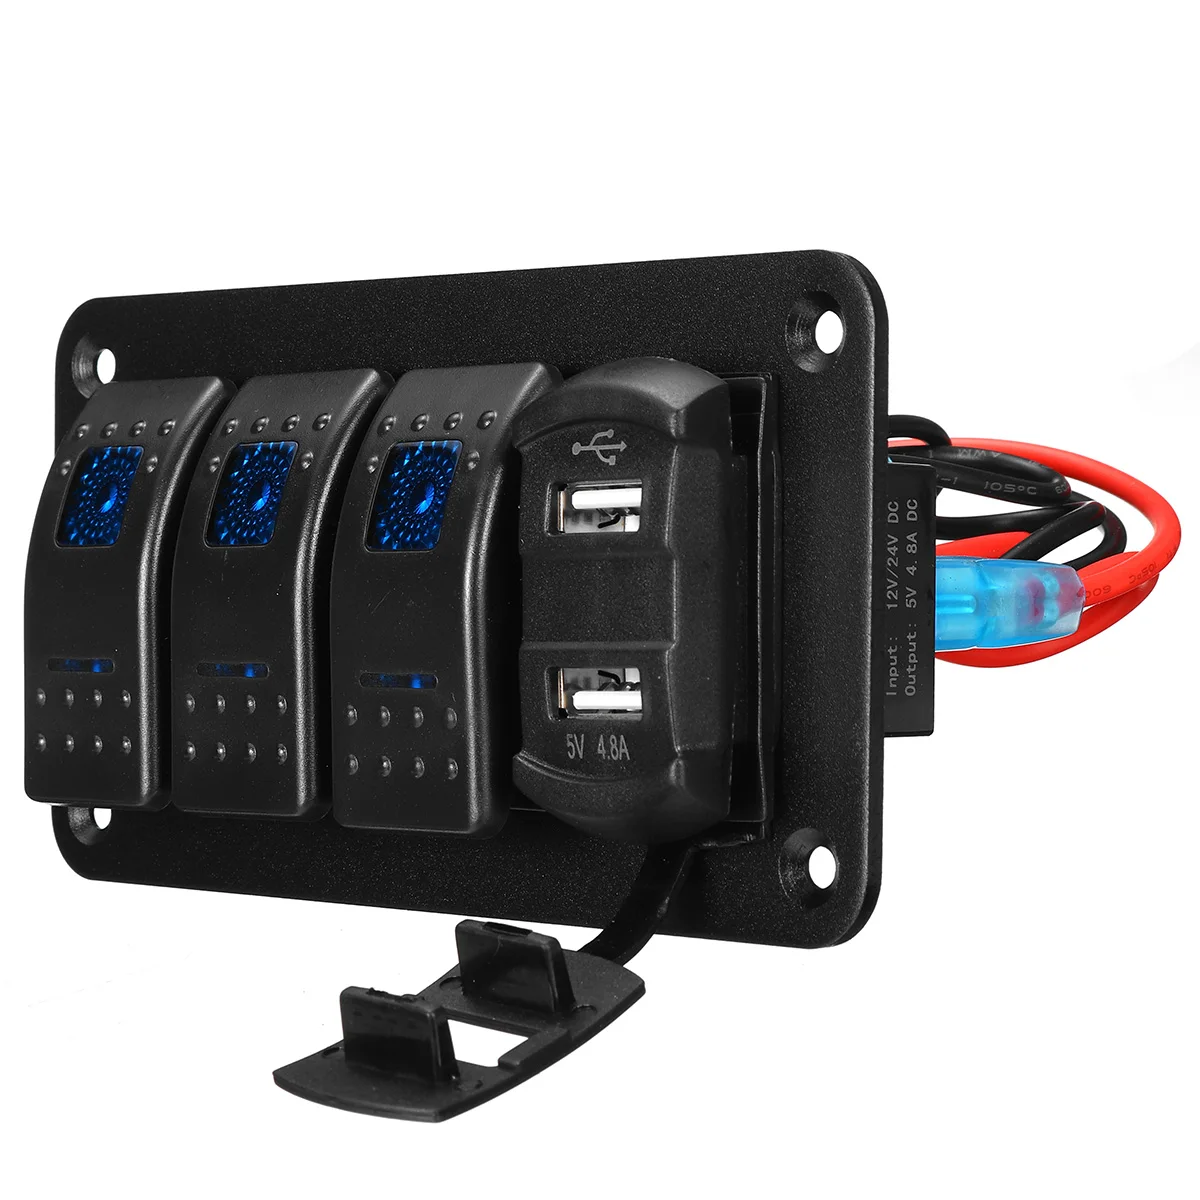 4 Bande LEDET Rocker Switch Panel Digital Voltmeter Dual USB Port 12V / 24V Stikkontakt Kombination Vandtæt Bilen, Båden